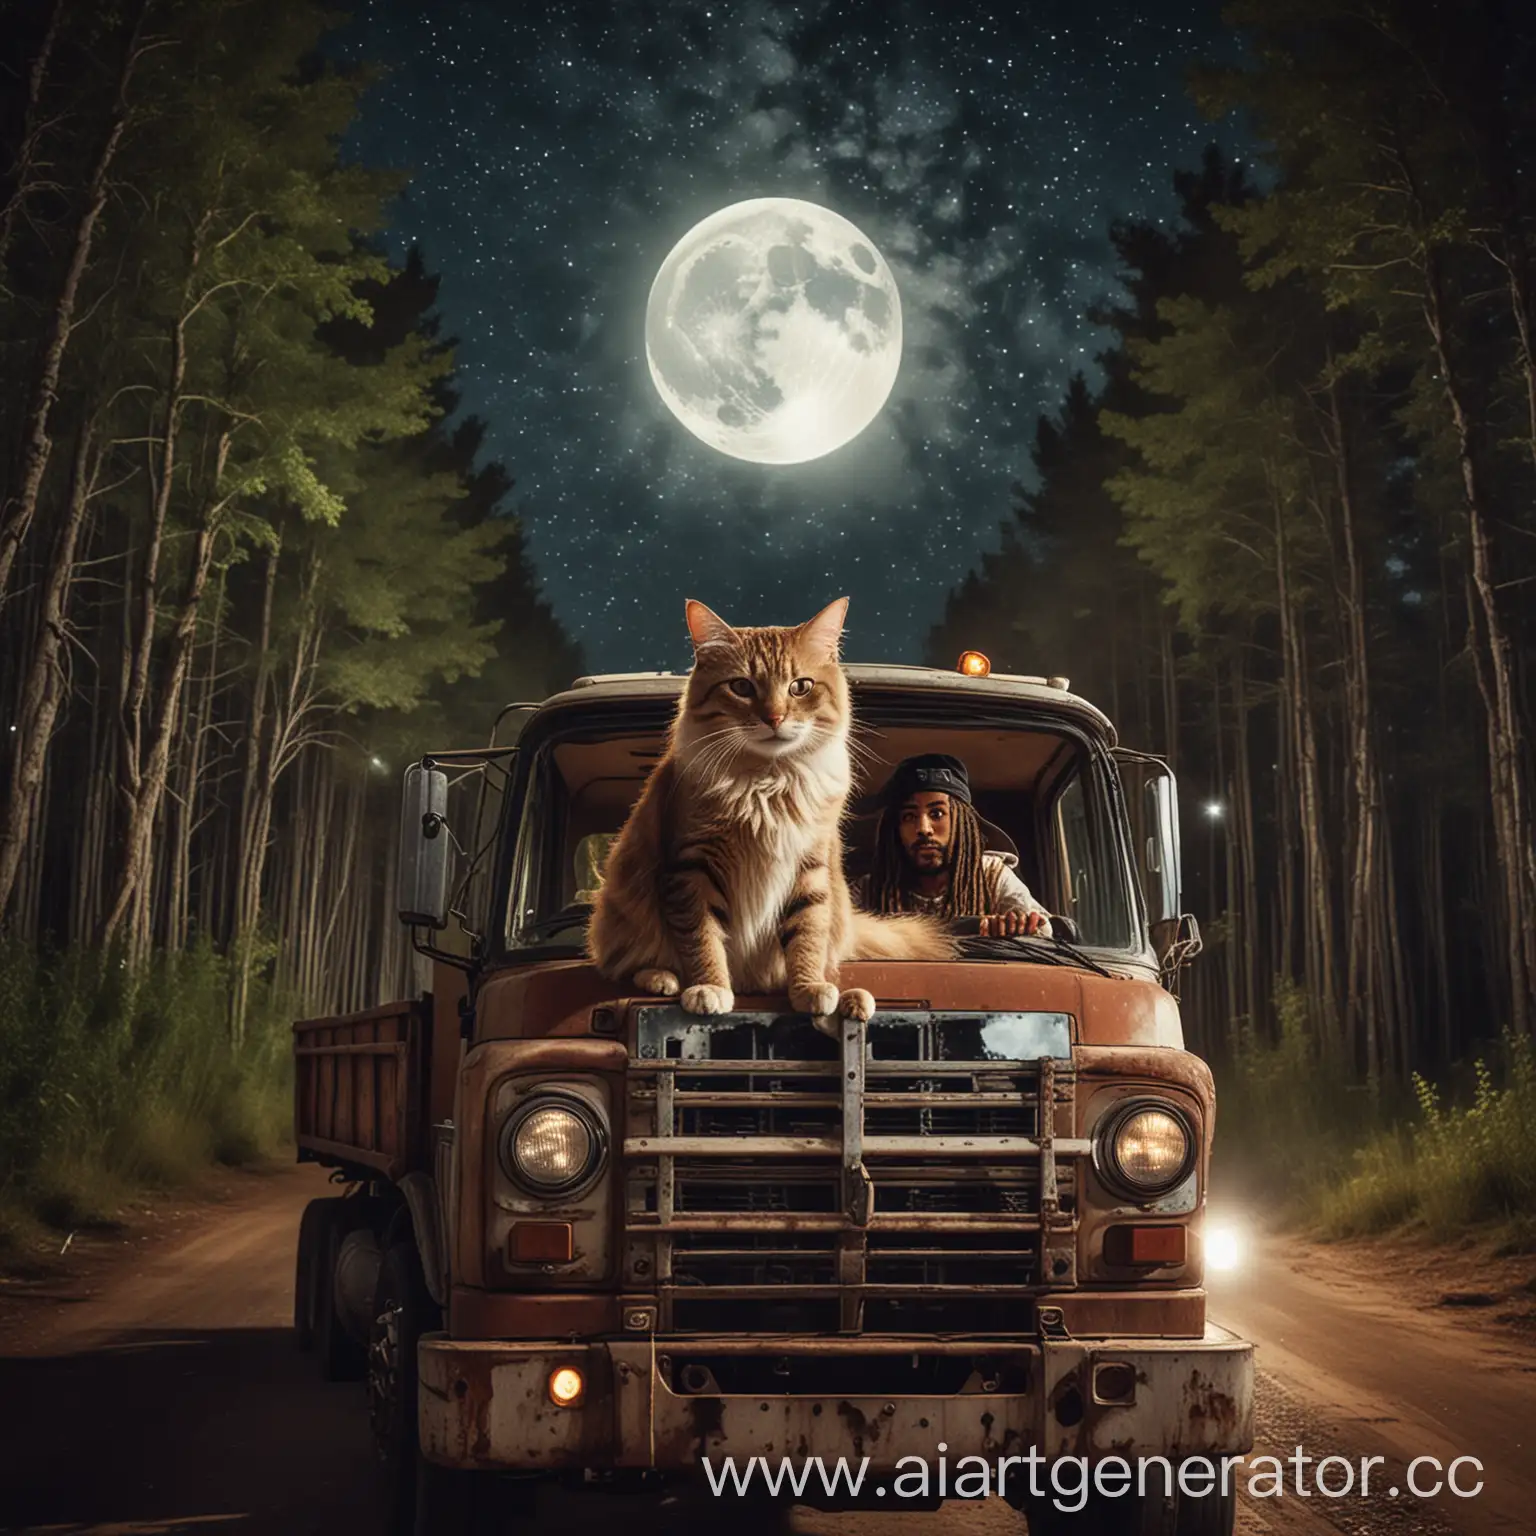 Кот растаман за рулем фуры едущей по танцполу на фоне леса фоне и ночного неба с большой красивой луной